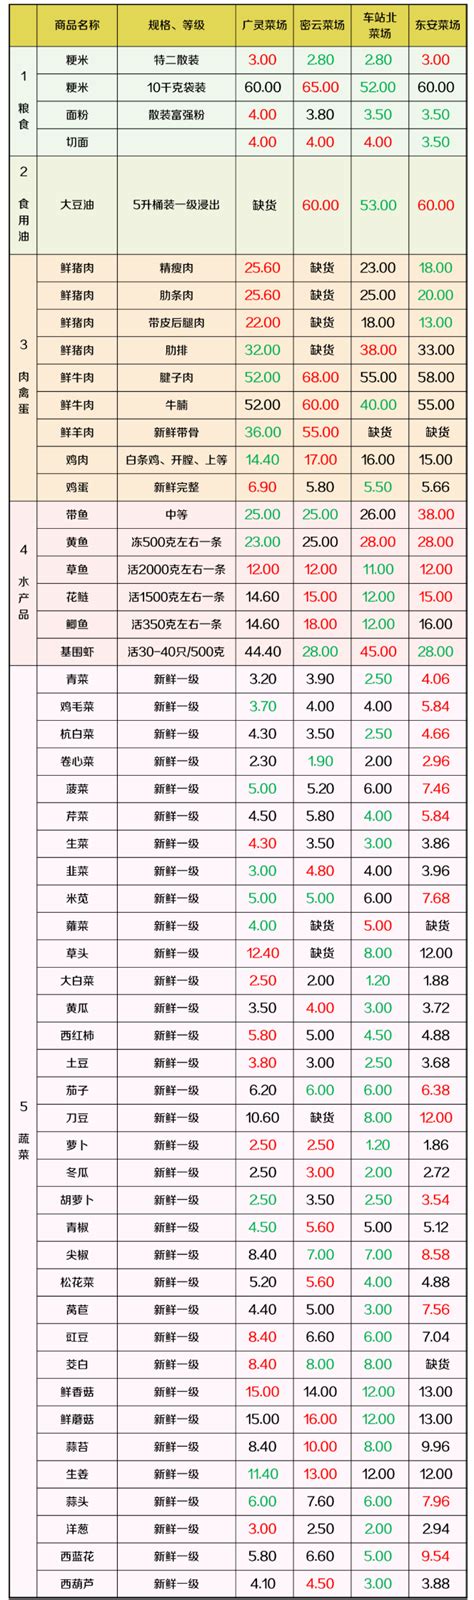 上海虹口区最新物价信息(6月10日发布) - 上海慢慢看